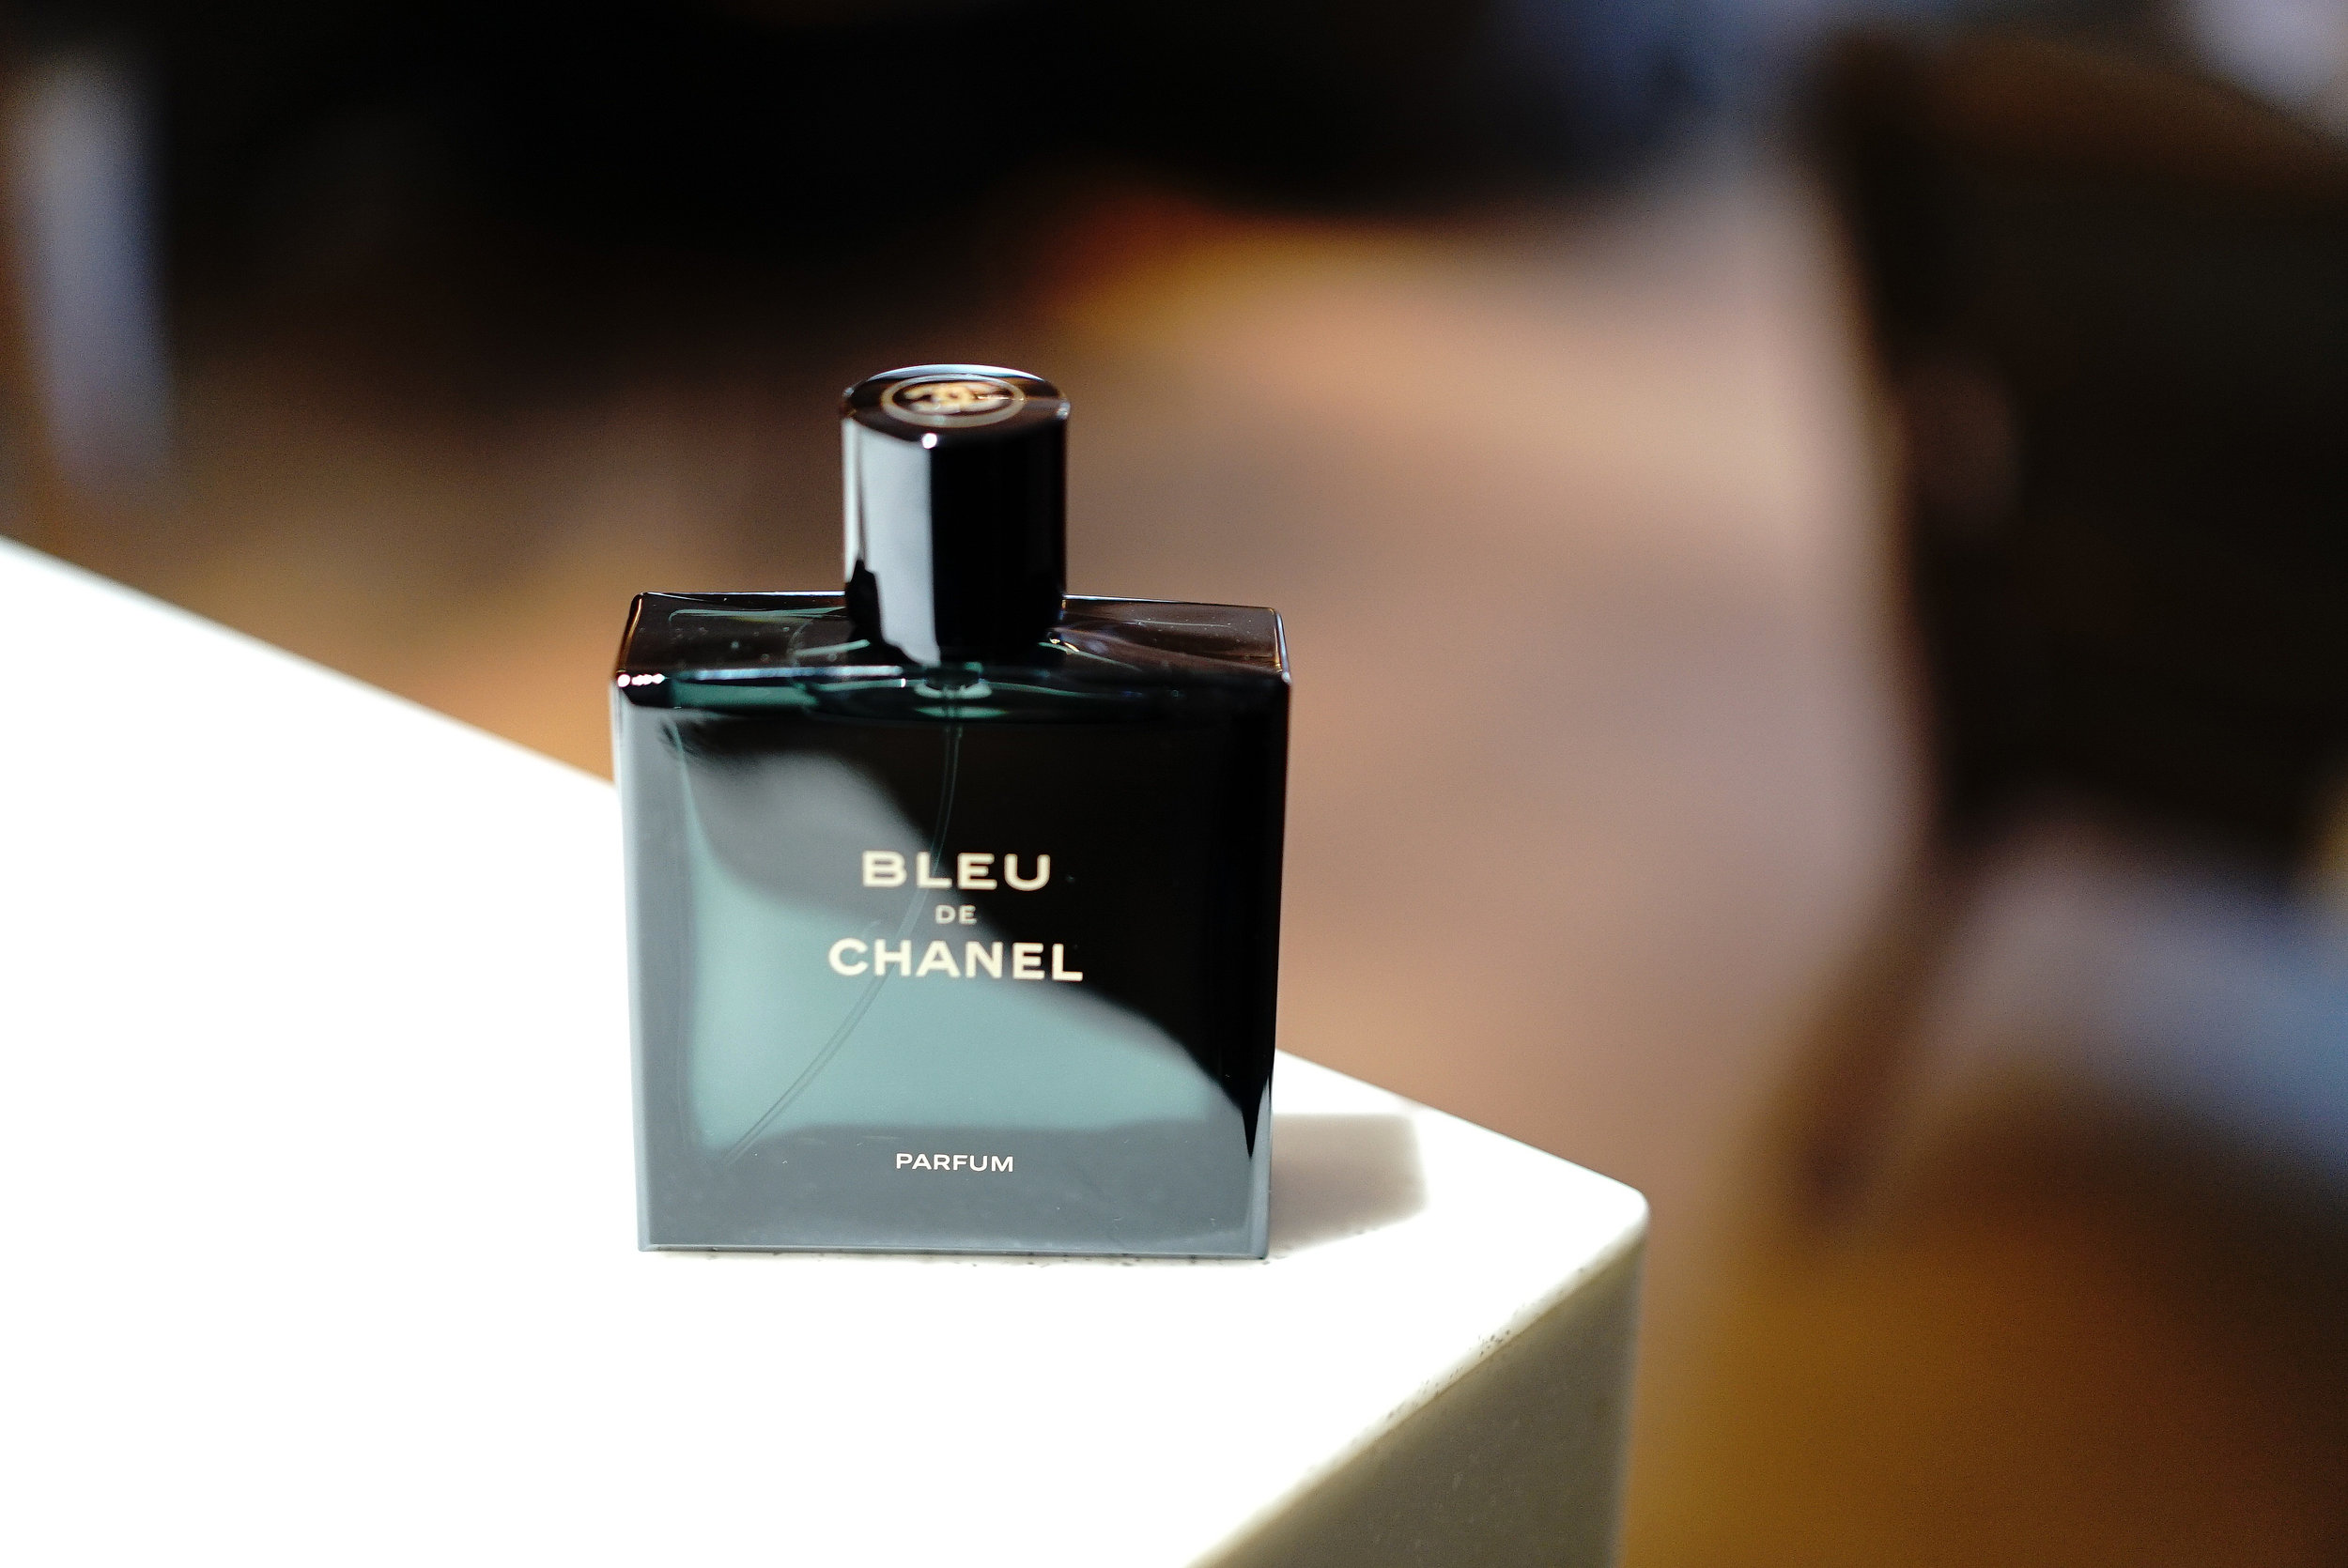 Chanel Bleu Eau De Parfum Review Deals, 58% OFF 